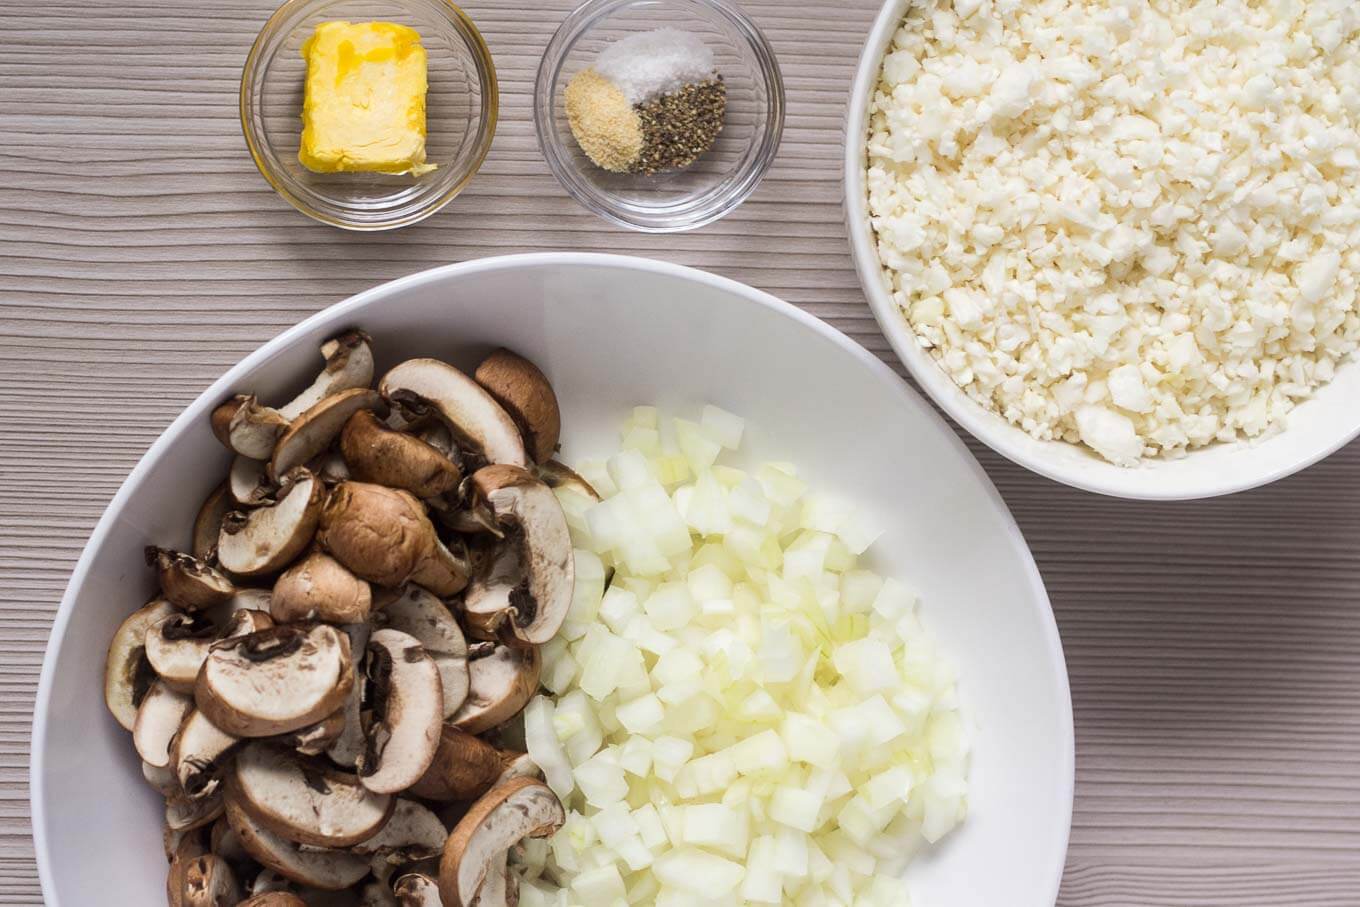 Ingredients: uncooked cauliflower rice, sliced mushrooms, onion, butter, garlic powder, salt, pepper